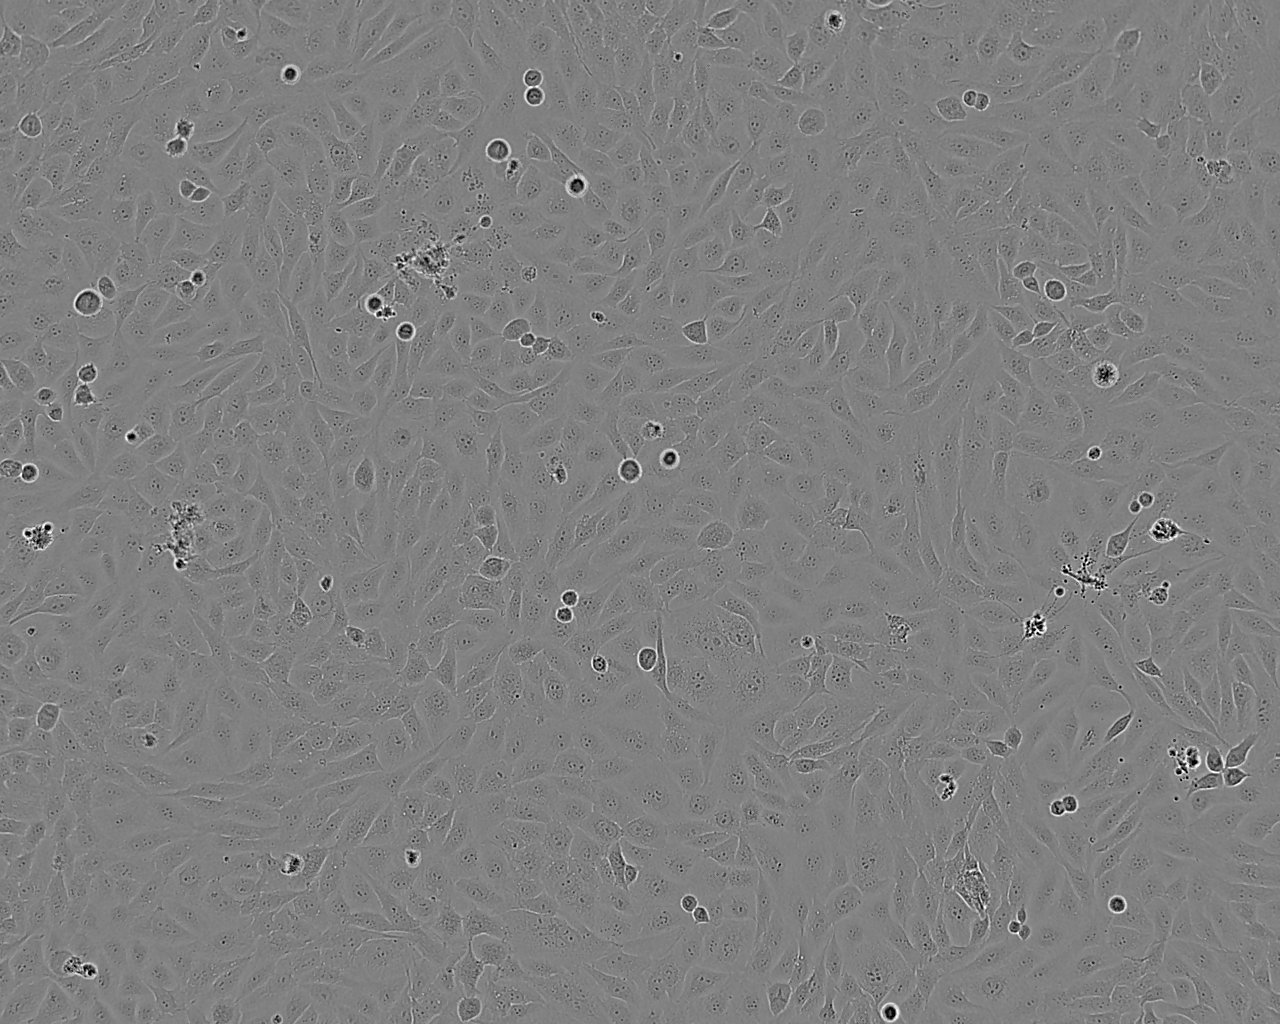 ND7/23 鼠神经母细胞瘤细胞系